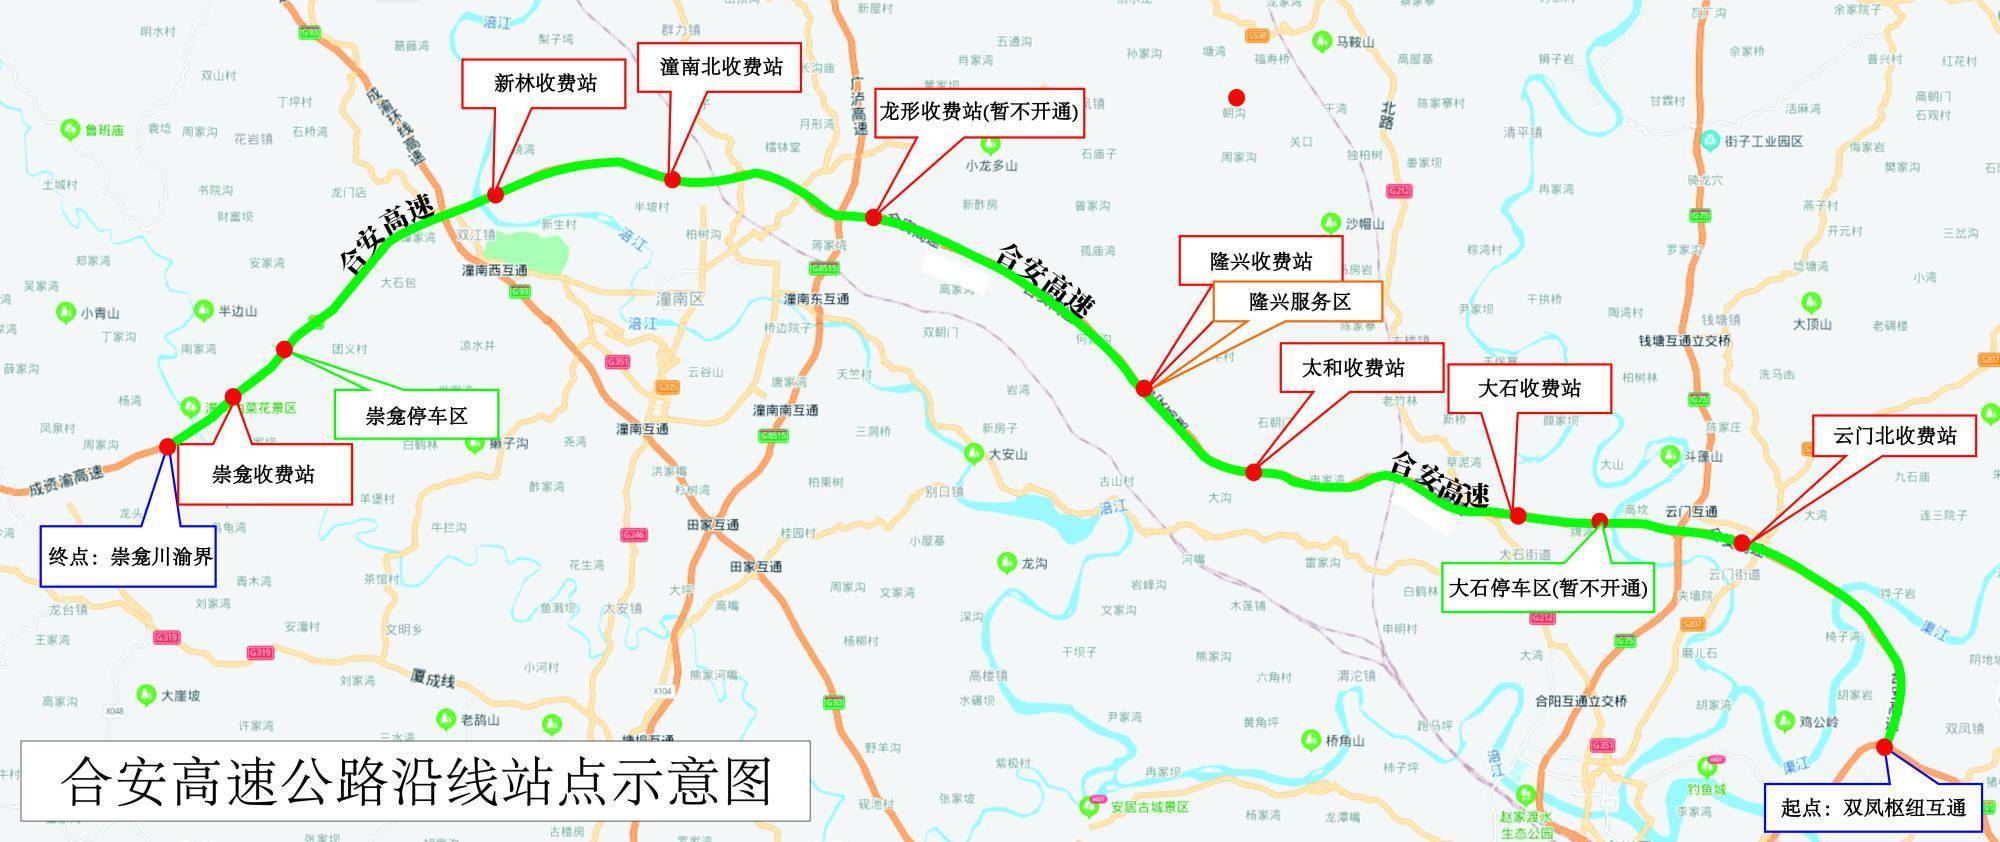 加快互联互通 重庆三条高速公路建成通车